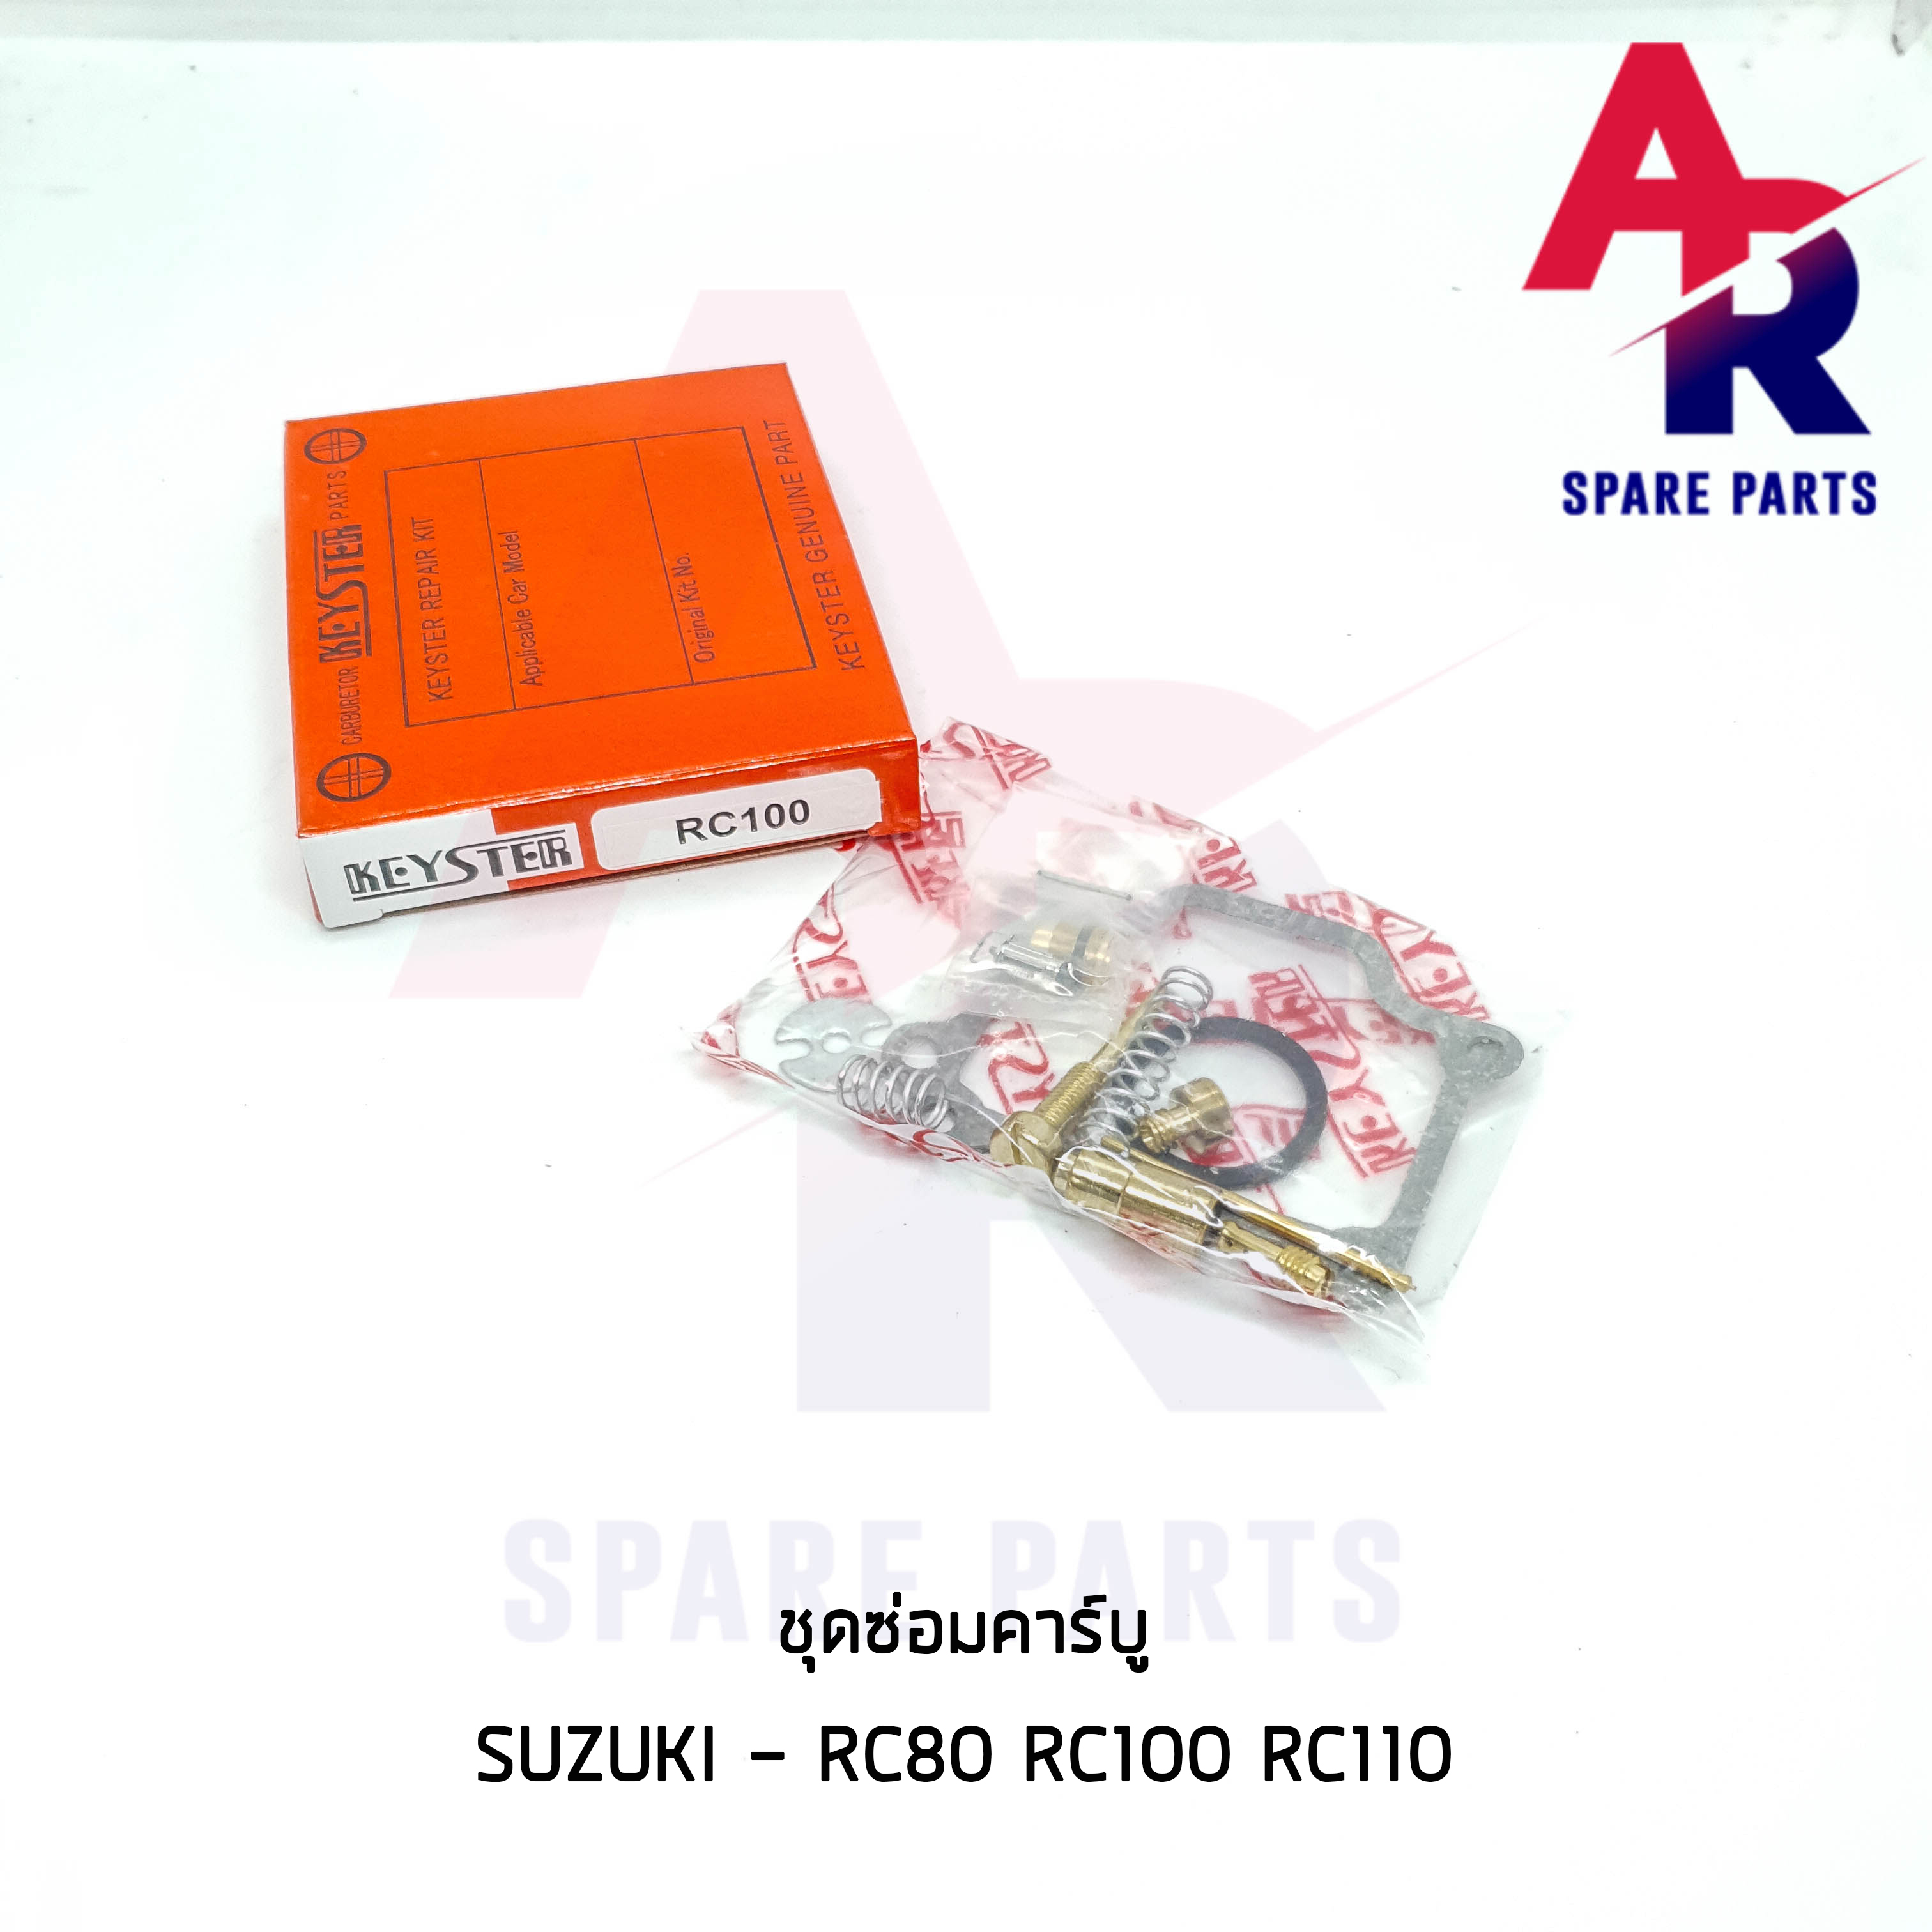 ชุดซ่อมคาบู SUZUKI - RC80 RC100 RC110